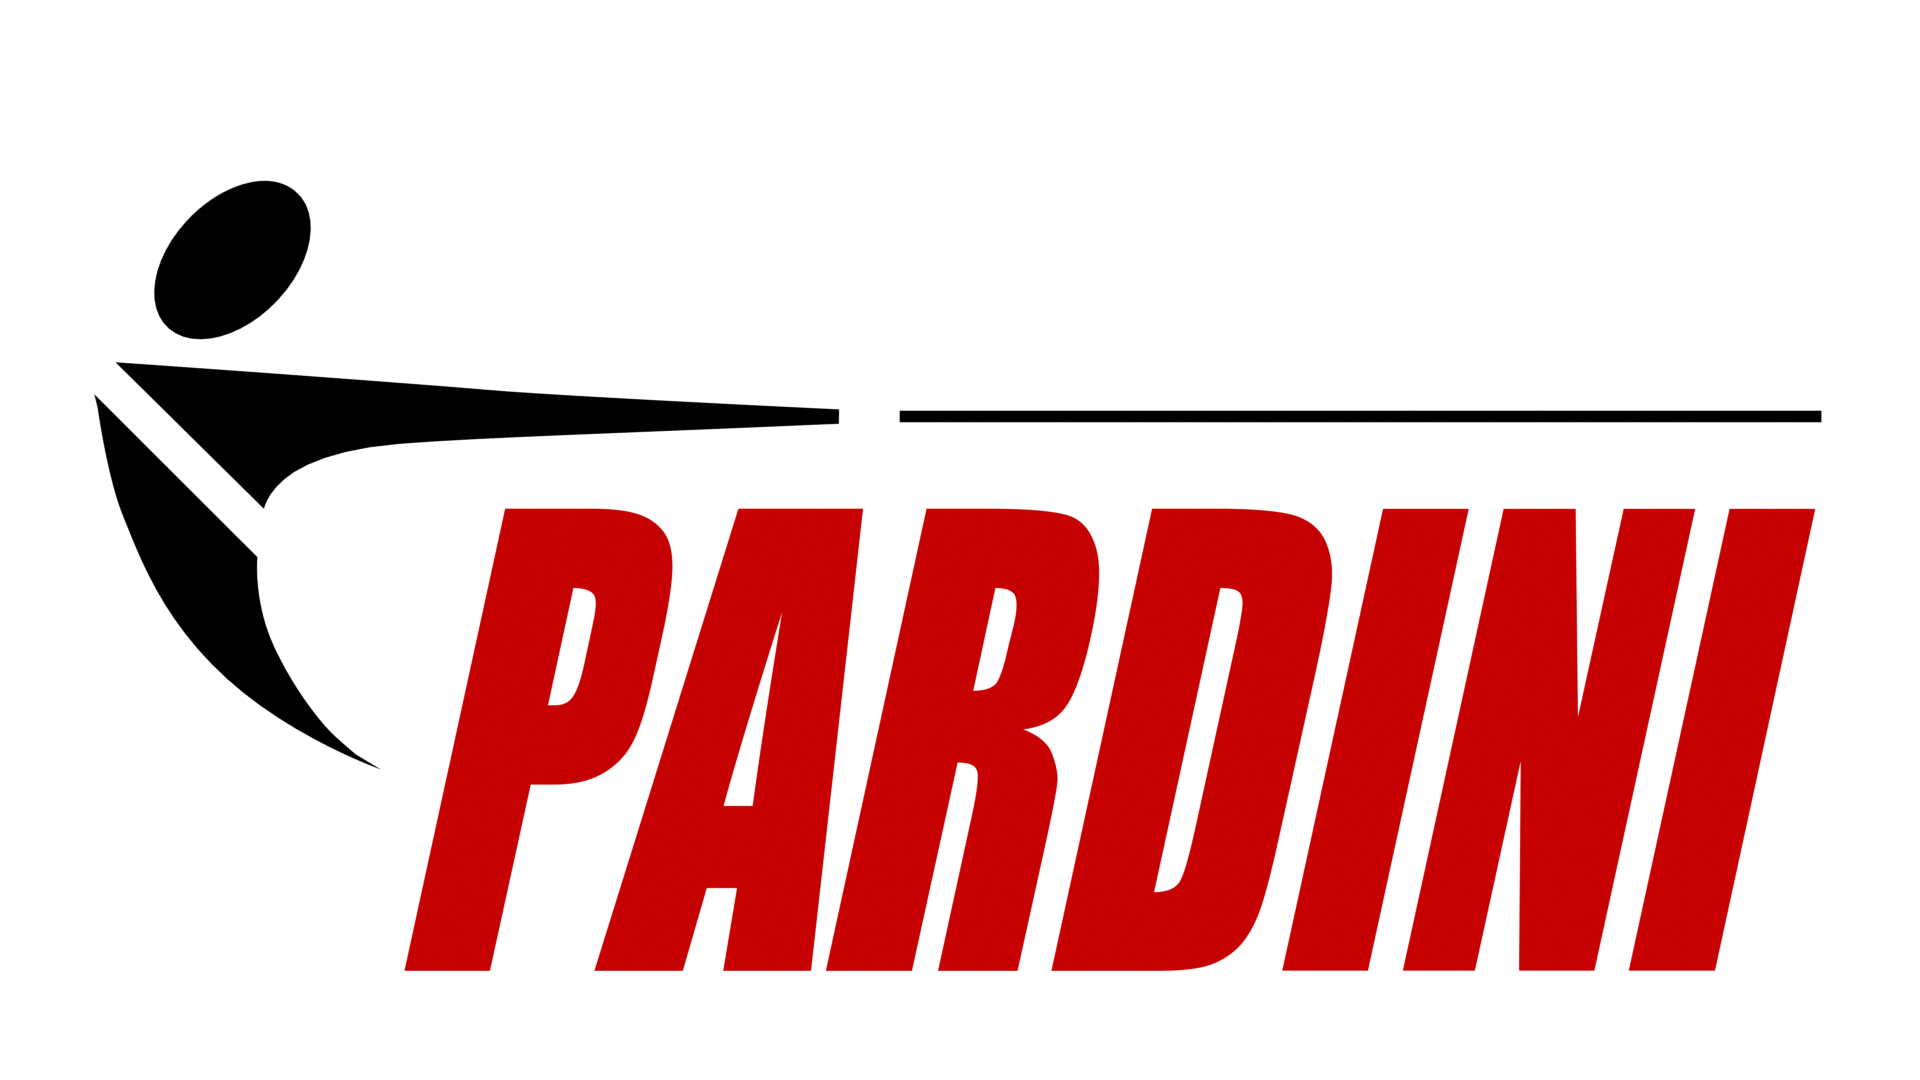 Pardini